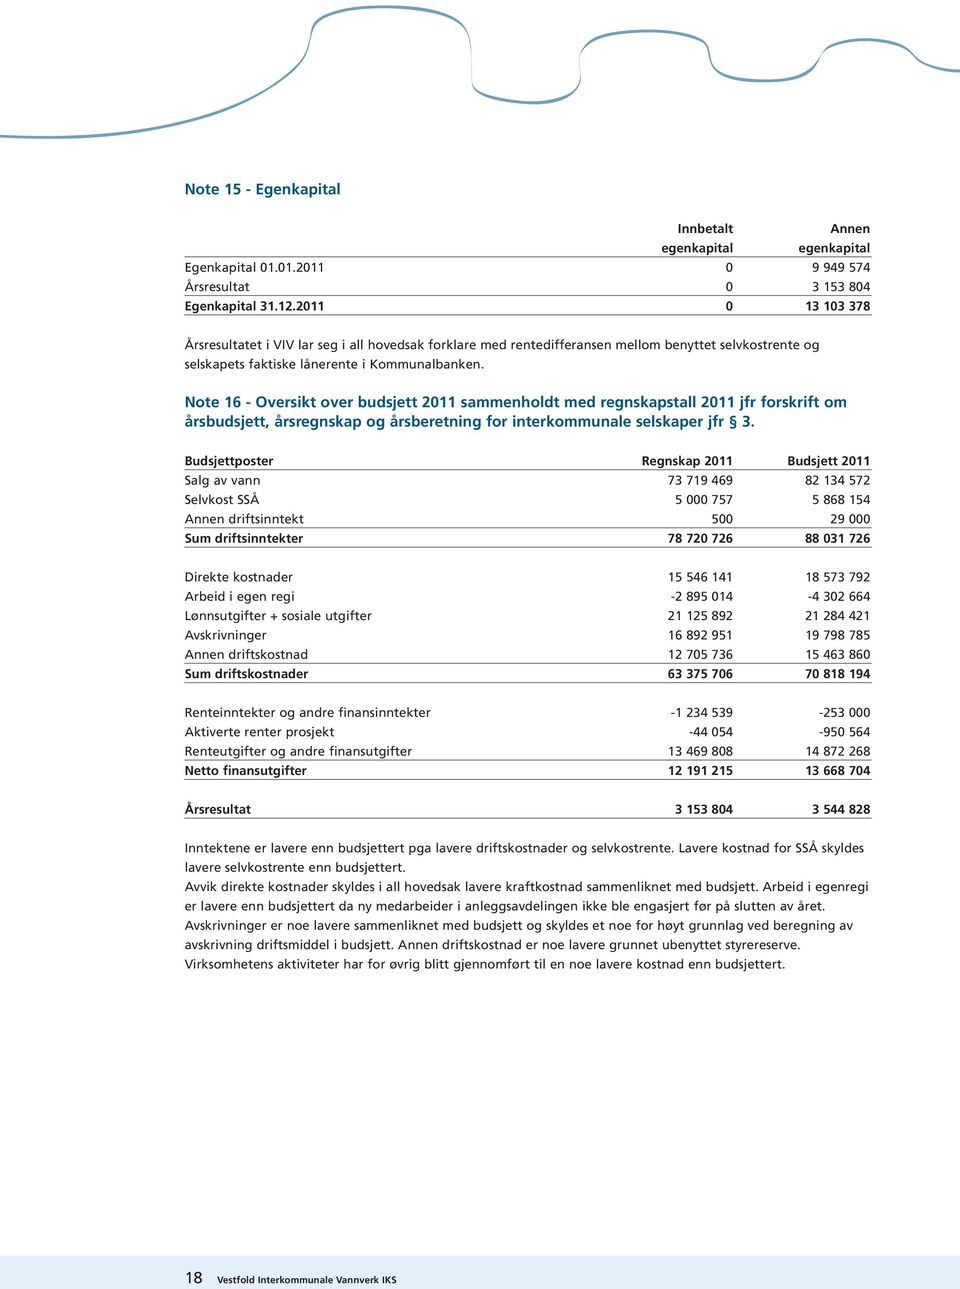 Note 16 - Oversikt over budsjett 2011 sammenholdt med regnskapstall 2011 jfr forskrift om årsbudsjett, årsregnskap og årsberetning for interkommunale selskaper jfr 3.